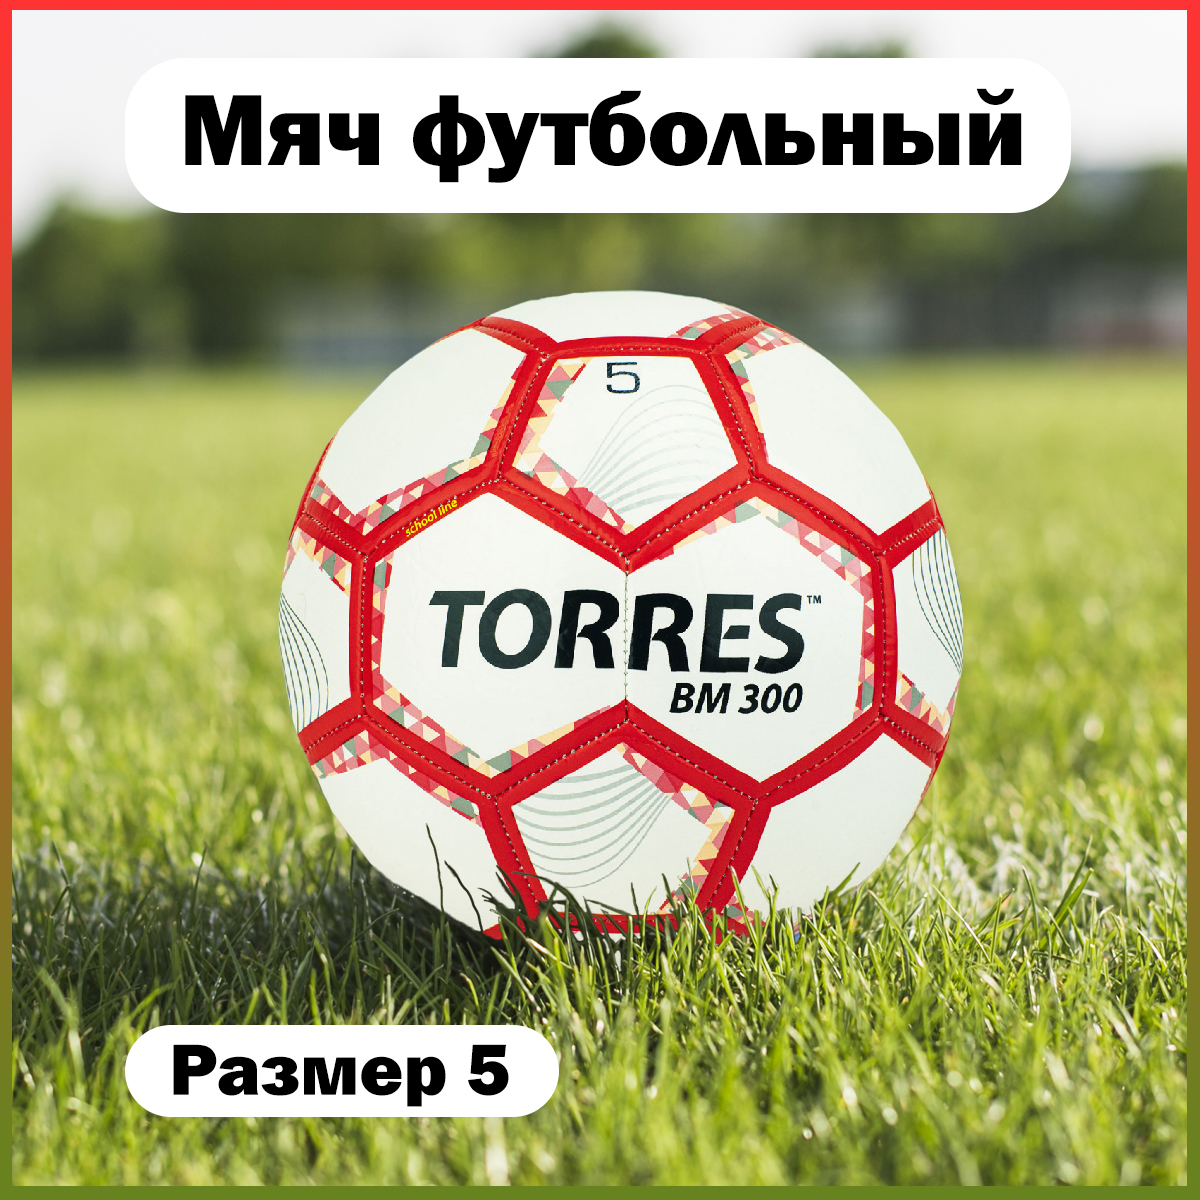 Футбольный мяч Torres BM 300 №5 white/red - купить в Дельта-фитнес.ру, цена на Мегамаркет